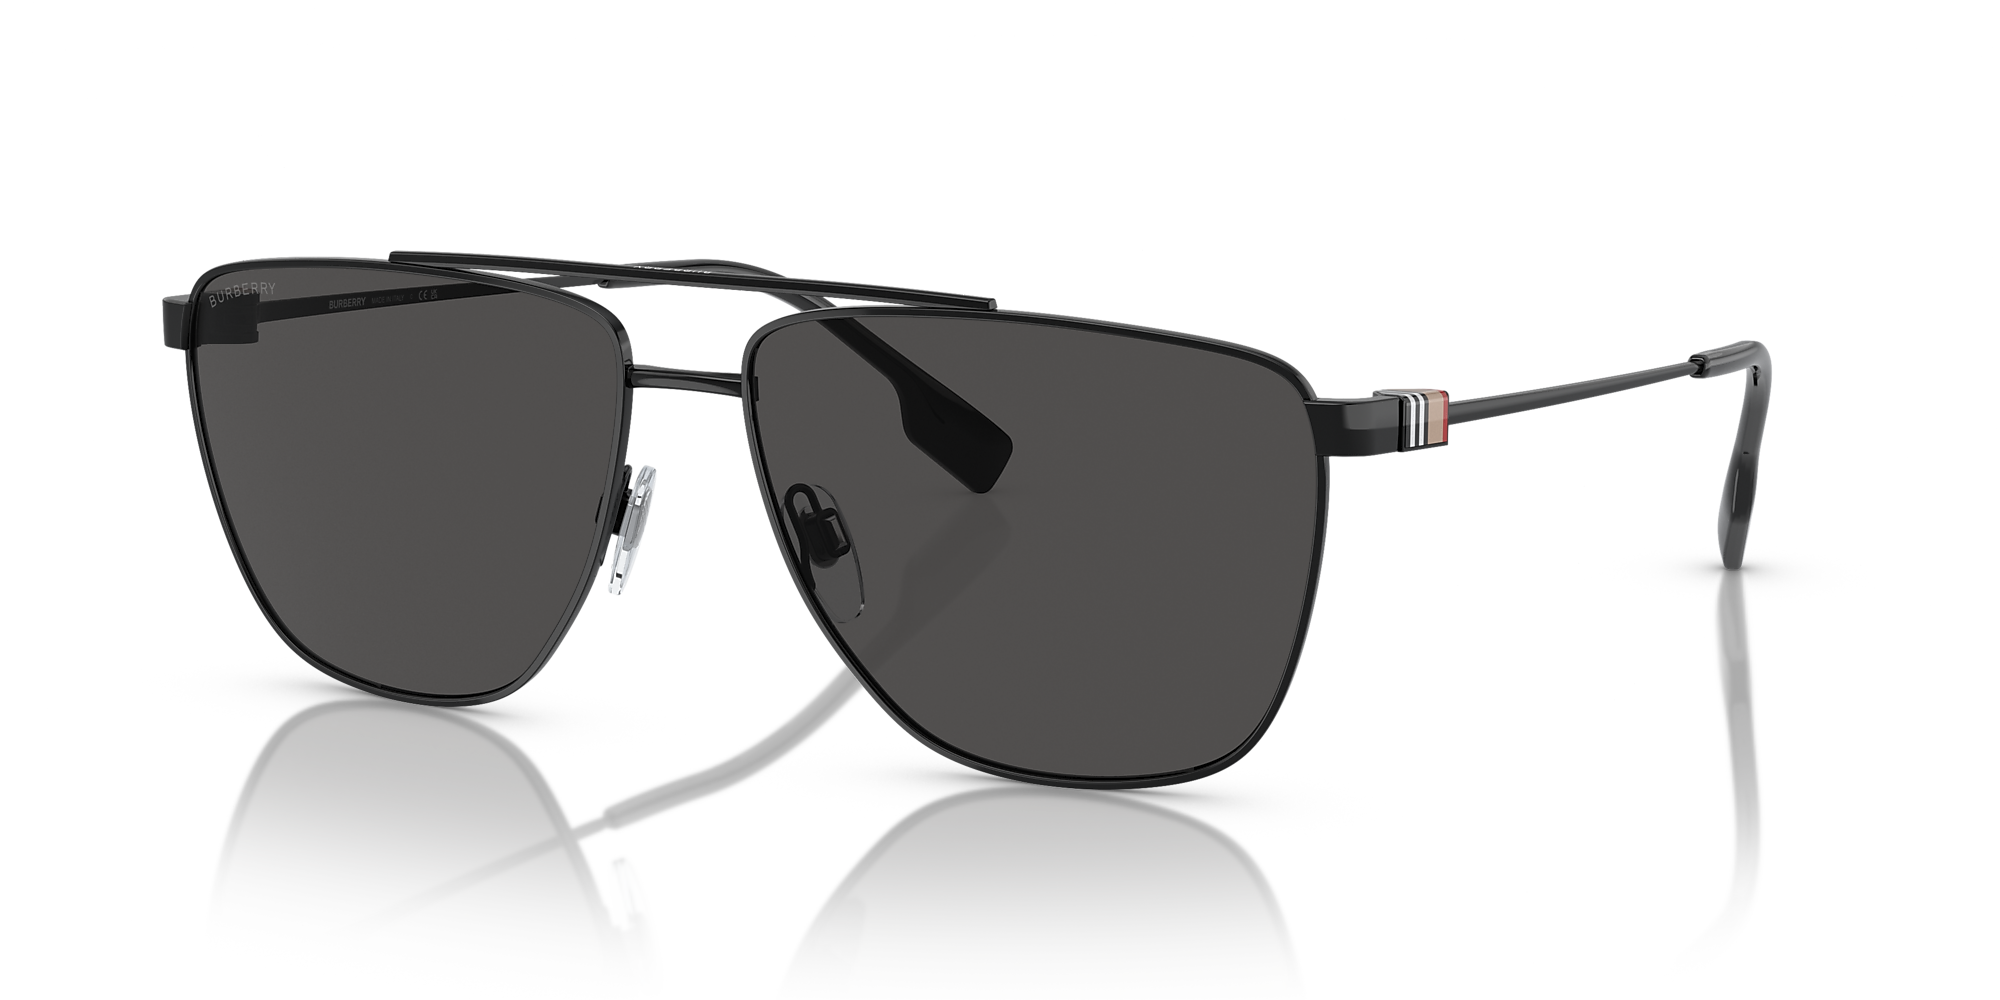 Burberry BE3141 Blaine 61 Dark Grey & Black Sunglasses | Sunglass Hut USA